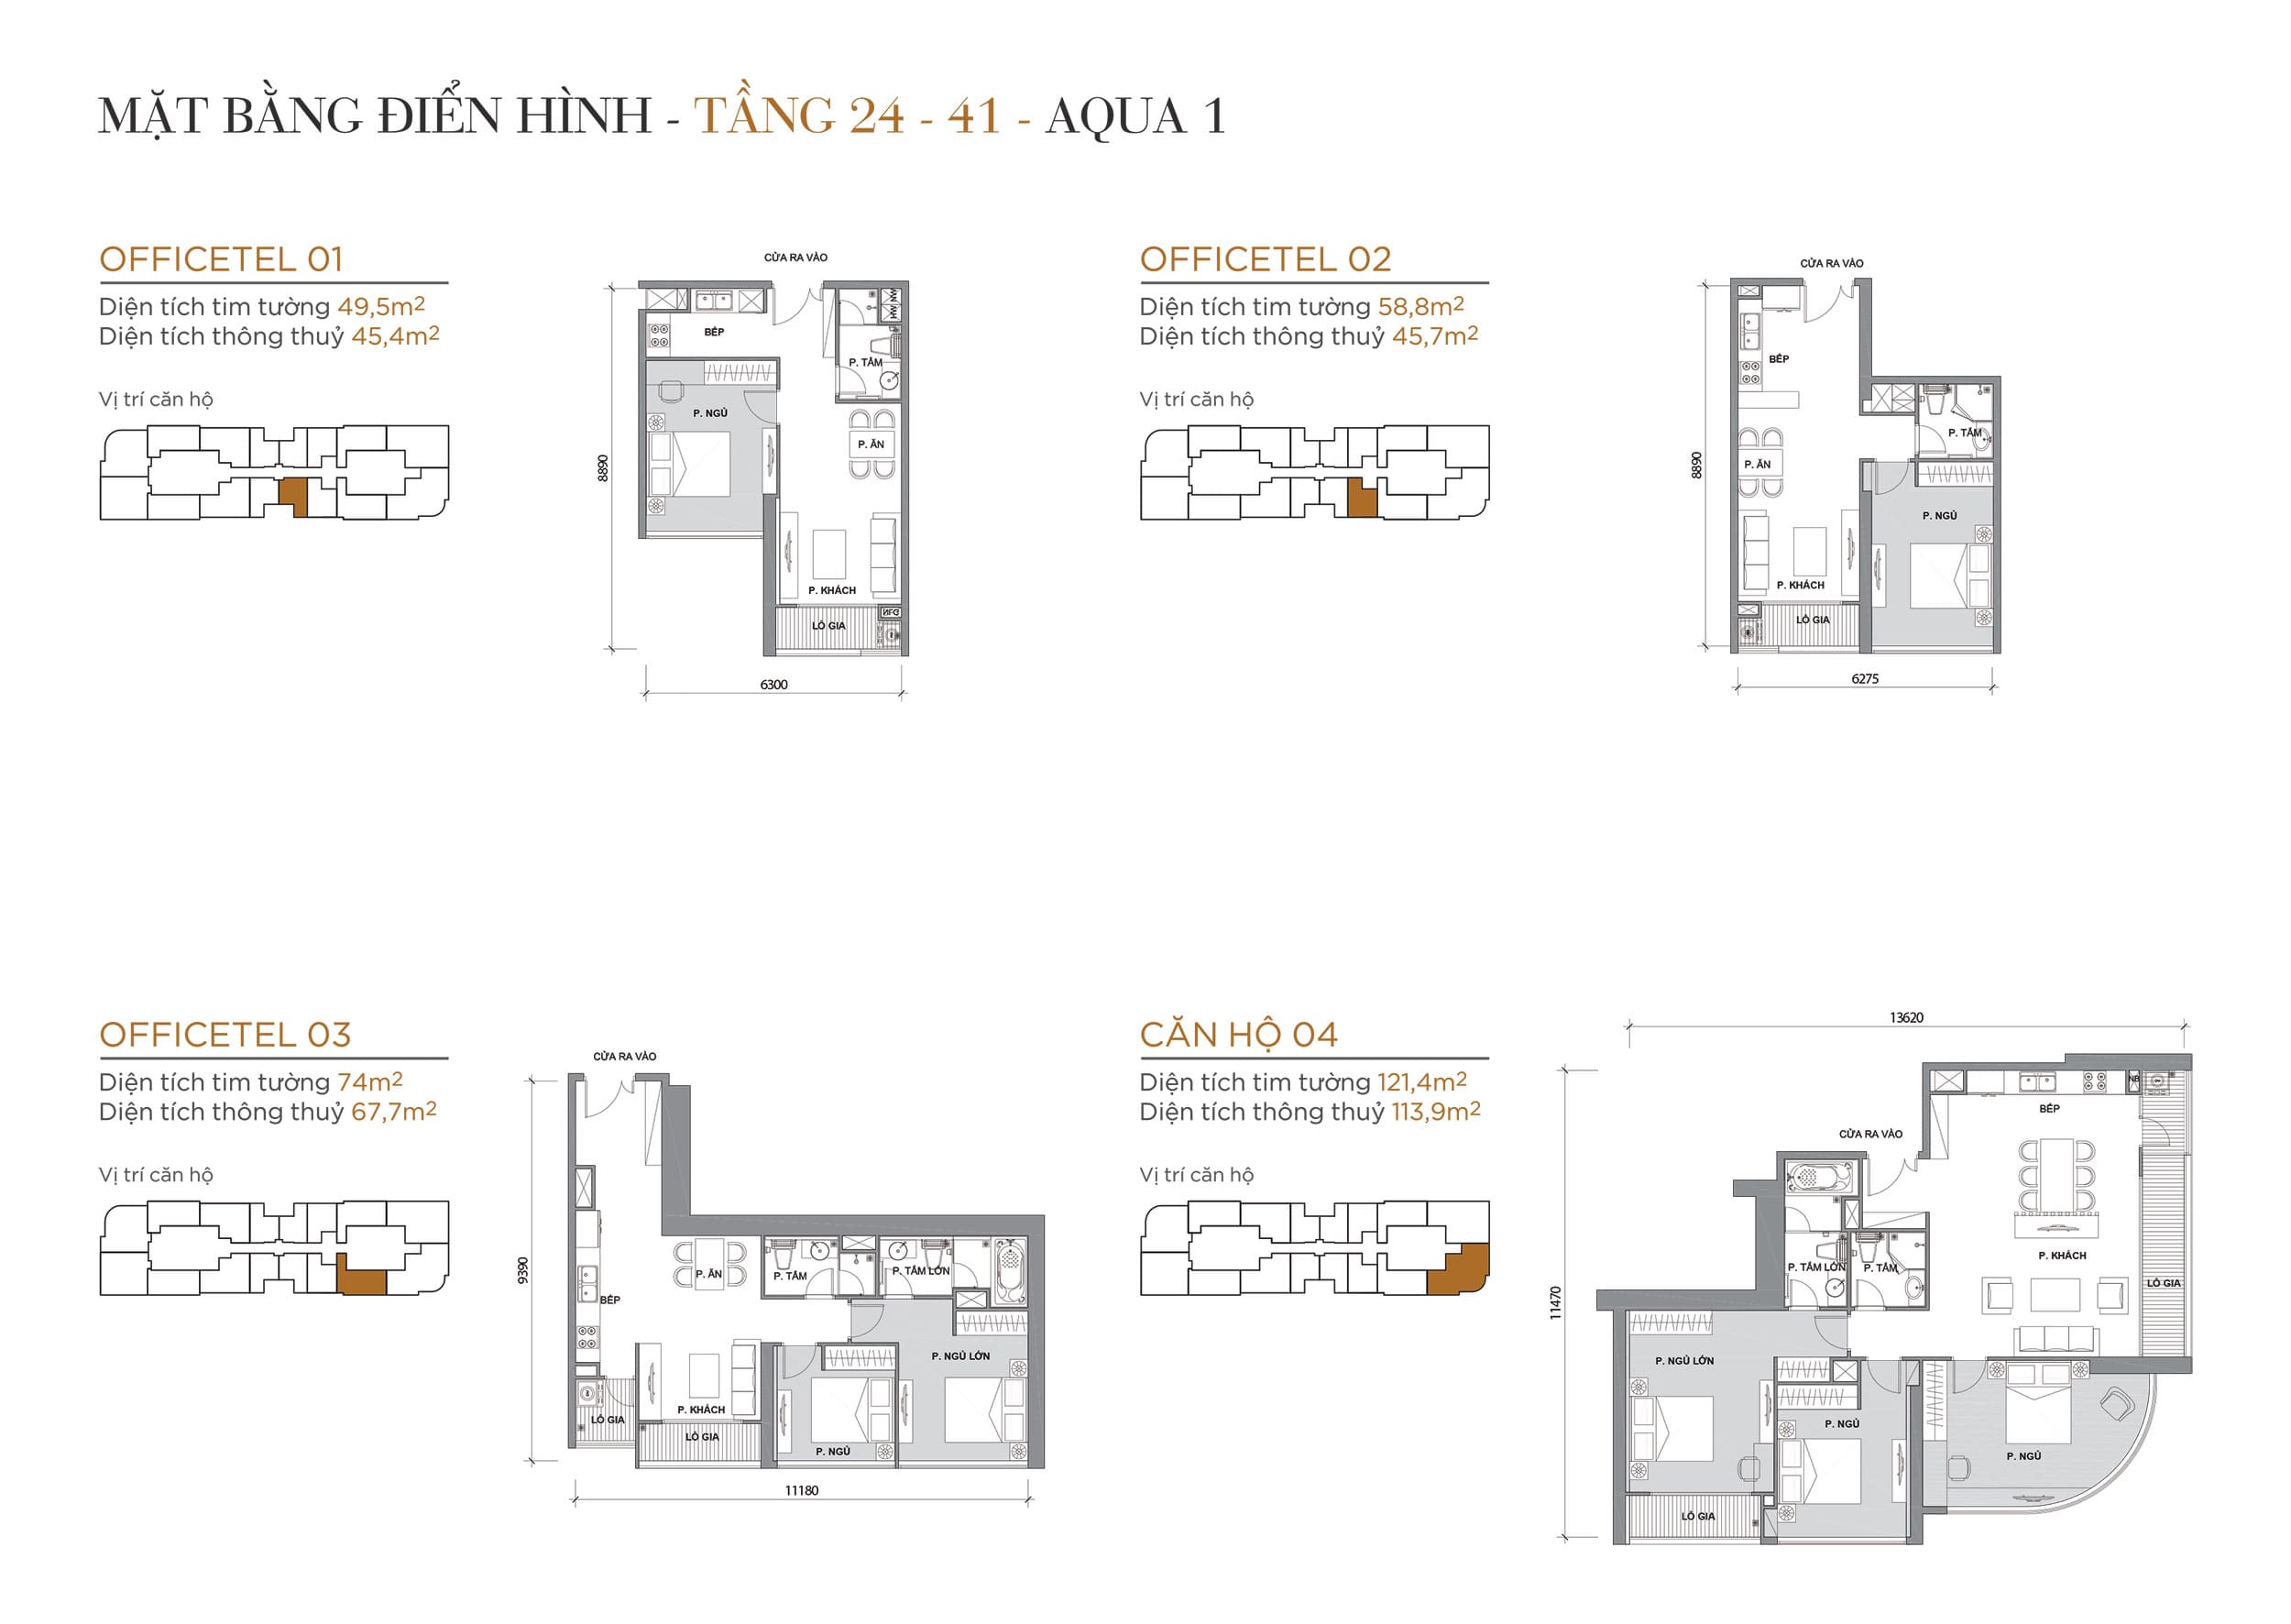 Layout thiết kế điển hình Tầng 24 đến Tầng 41 Tòa Aqua 1 loại Officetel 01, Officetel 02, Officetel 03, Căn hộ 04.